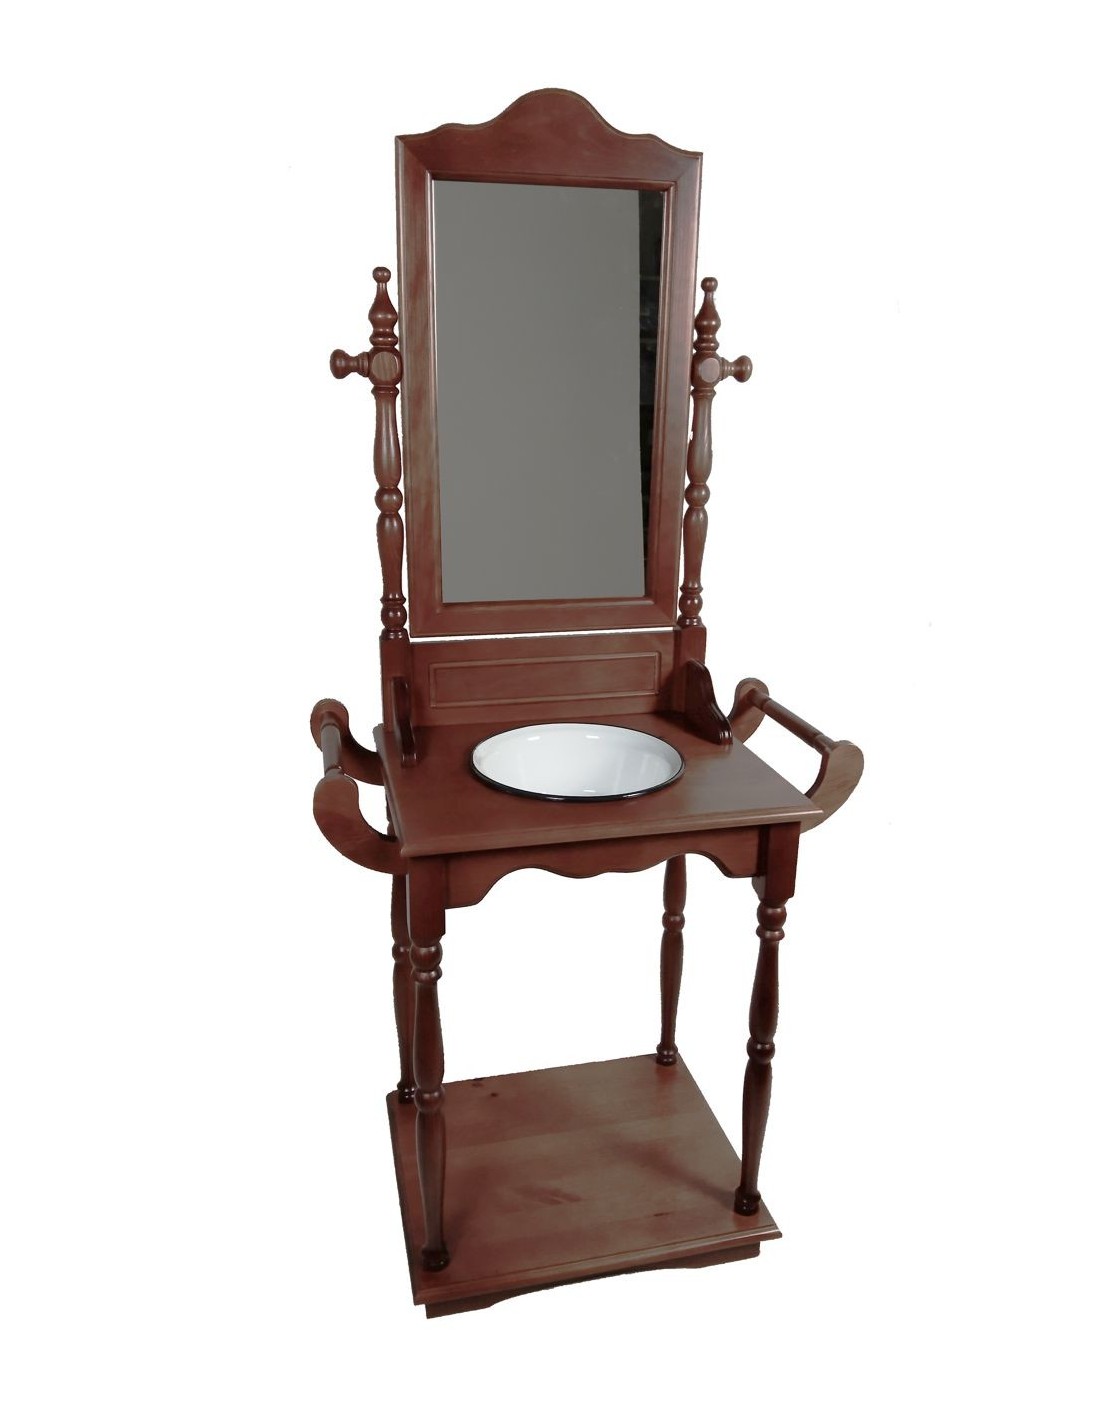 Palanganero madera maciza barnizada con palangana y espejo, decoración clásica mueble auxiliar.